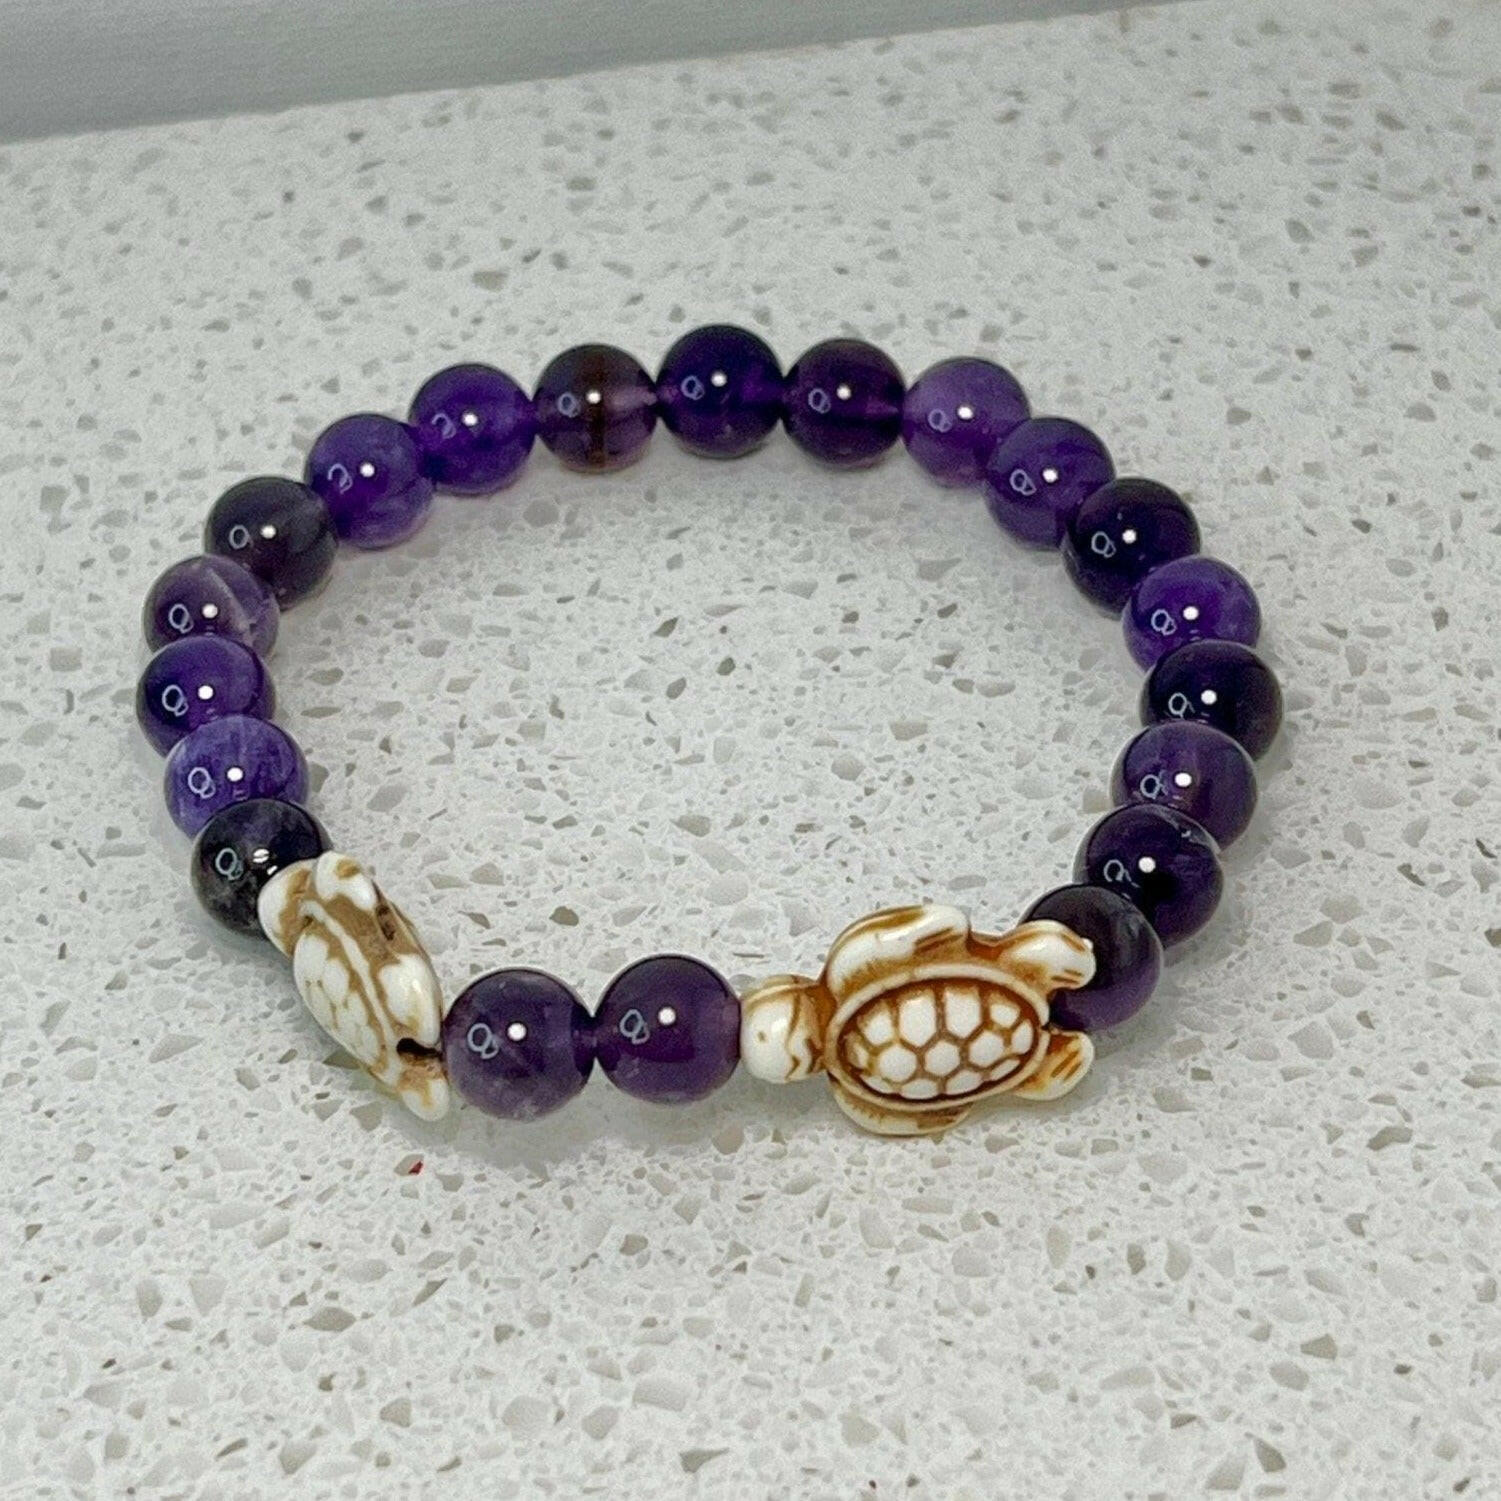 Bec Sue Jewelry Shop amethyst Bracelet 6.5 / purple / sea turtles/amethyst Turtle Amethyst Bracelet, Amethyst Turtle Jewelry Tags 209